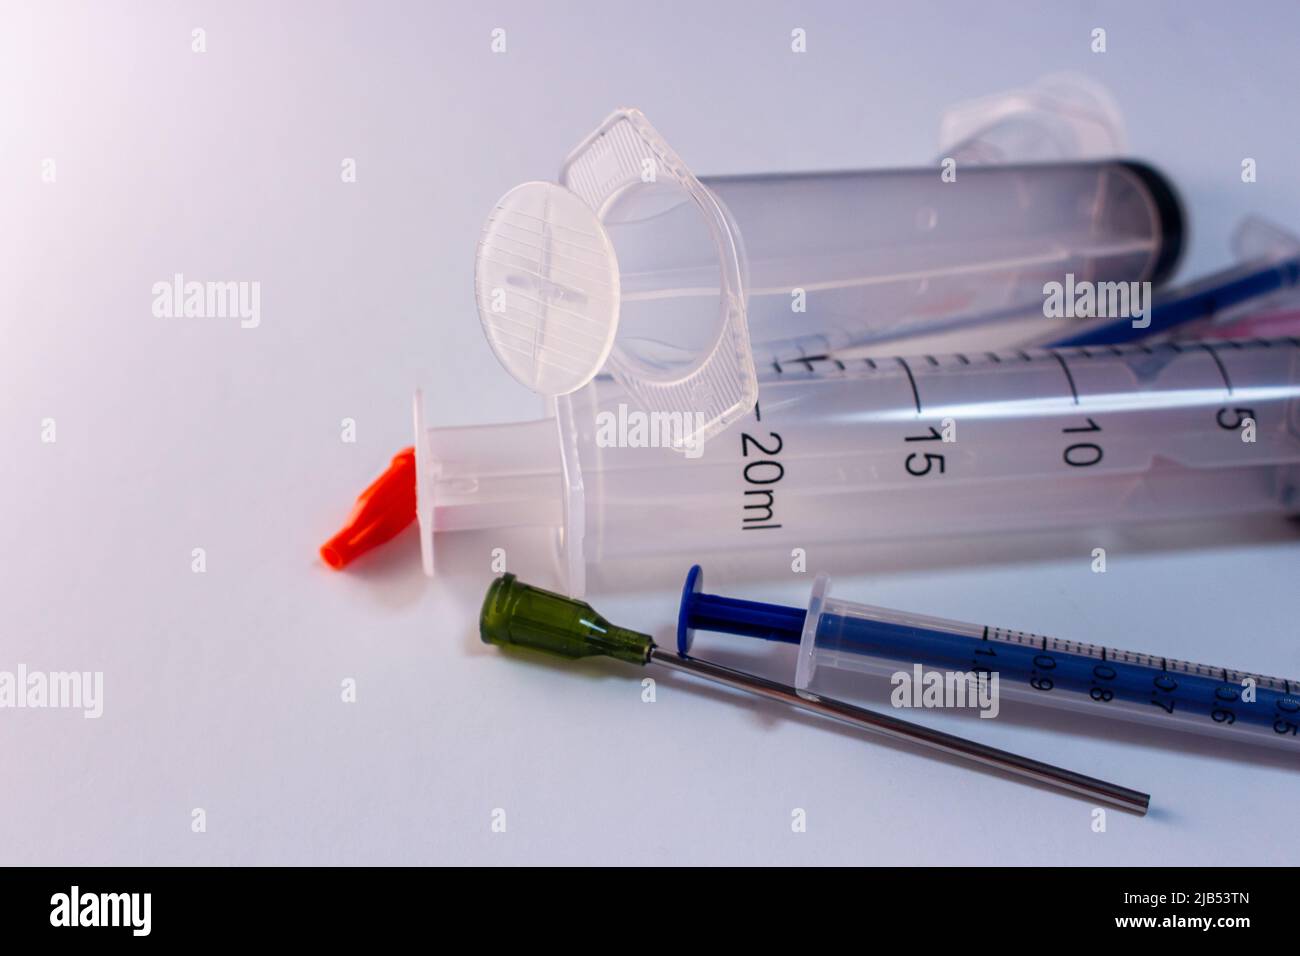 Medical syringe kit (needle, cap, syringe) on white background. Coronavirus, COVID-19, hospital and healthcare vaccine concept. Medical treatment tool Stock Photo